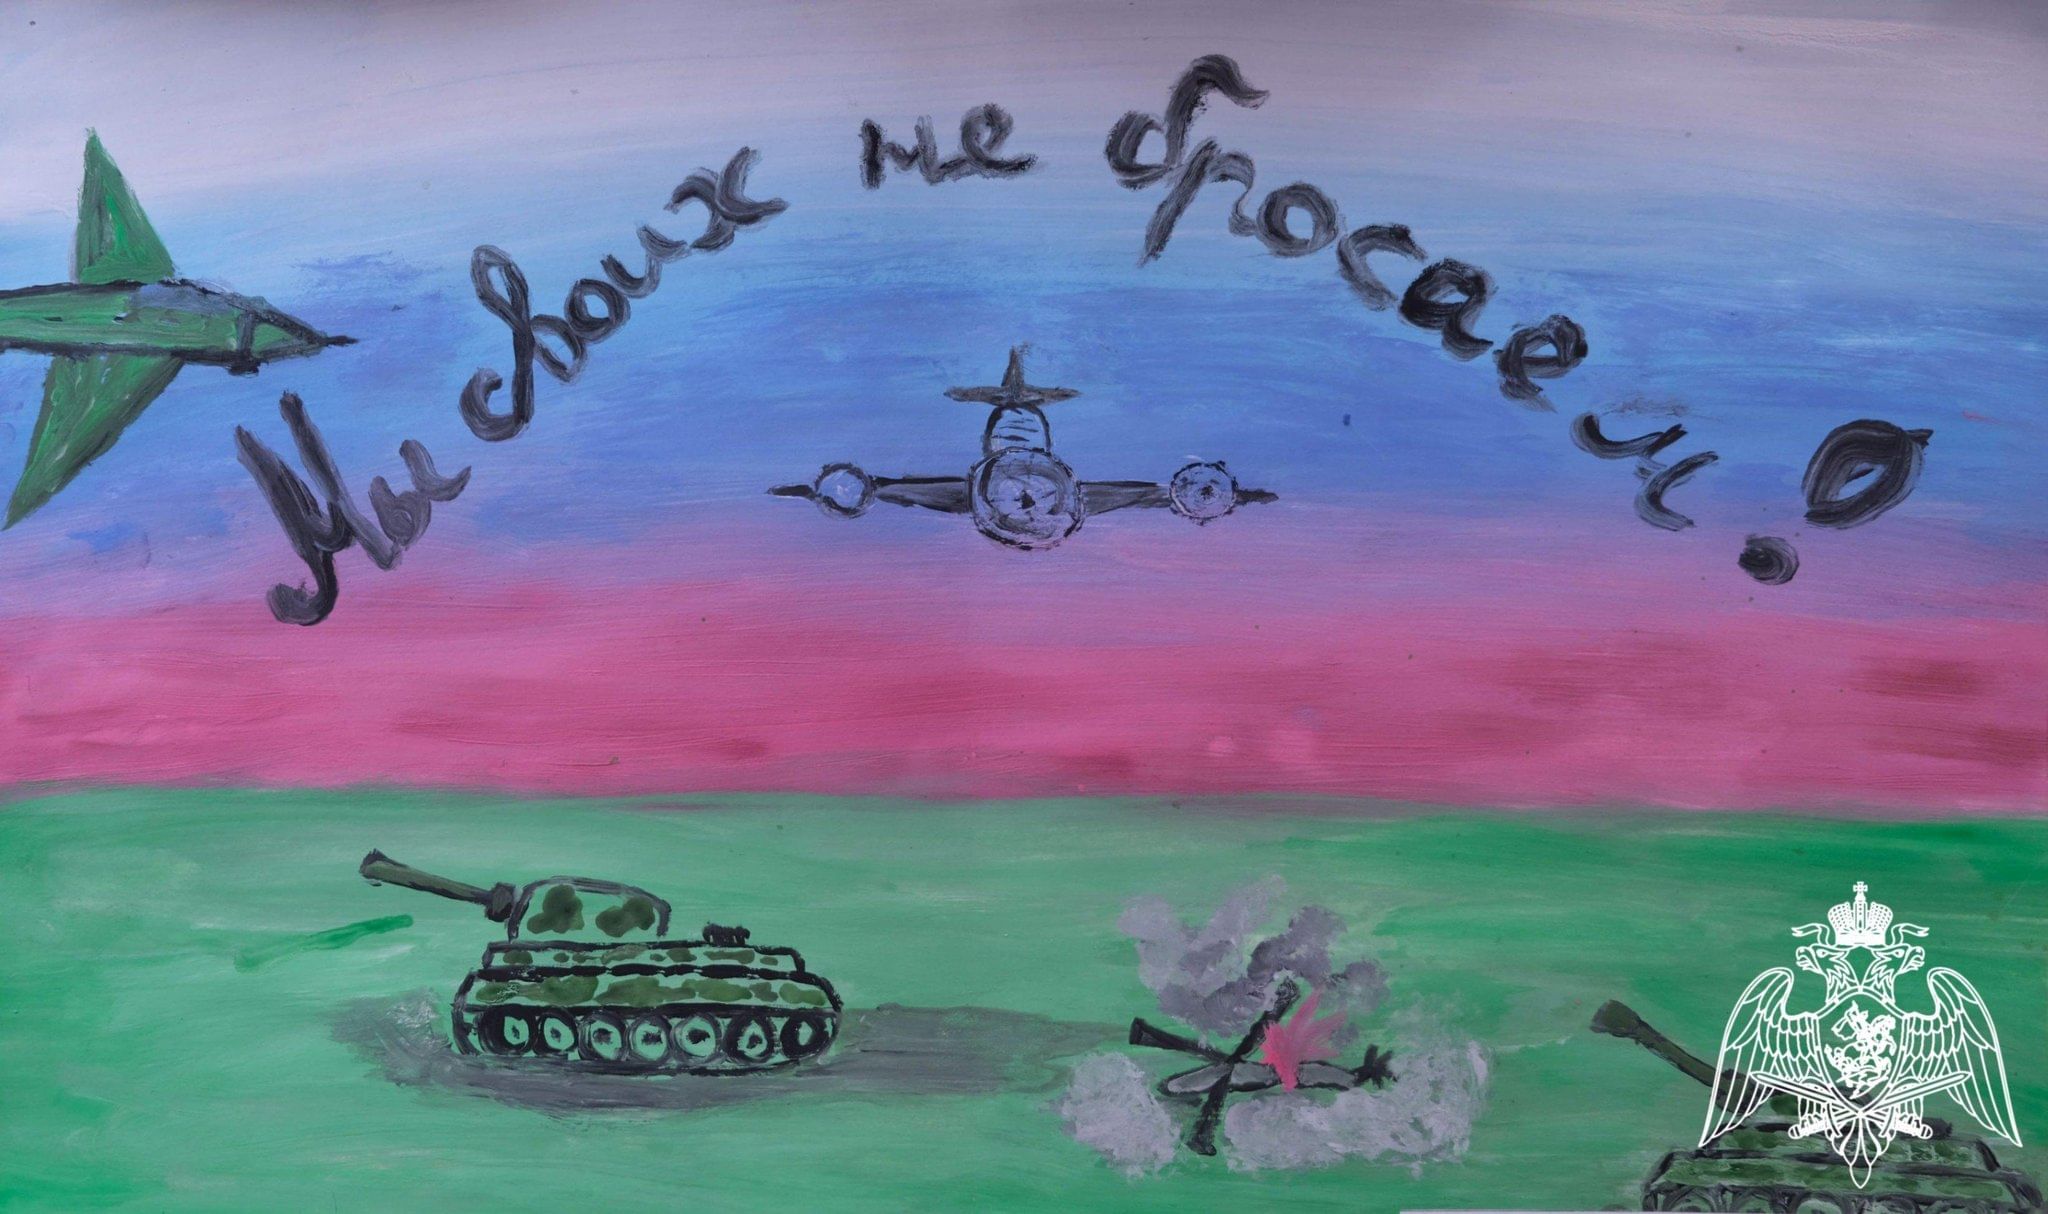 Рисунок в поддержку солдат